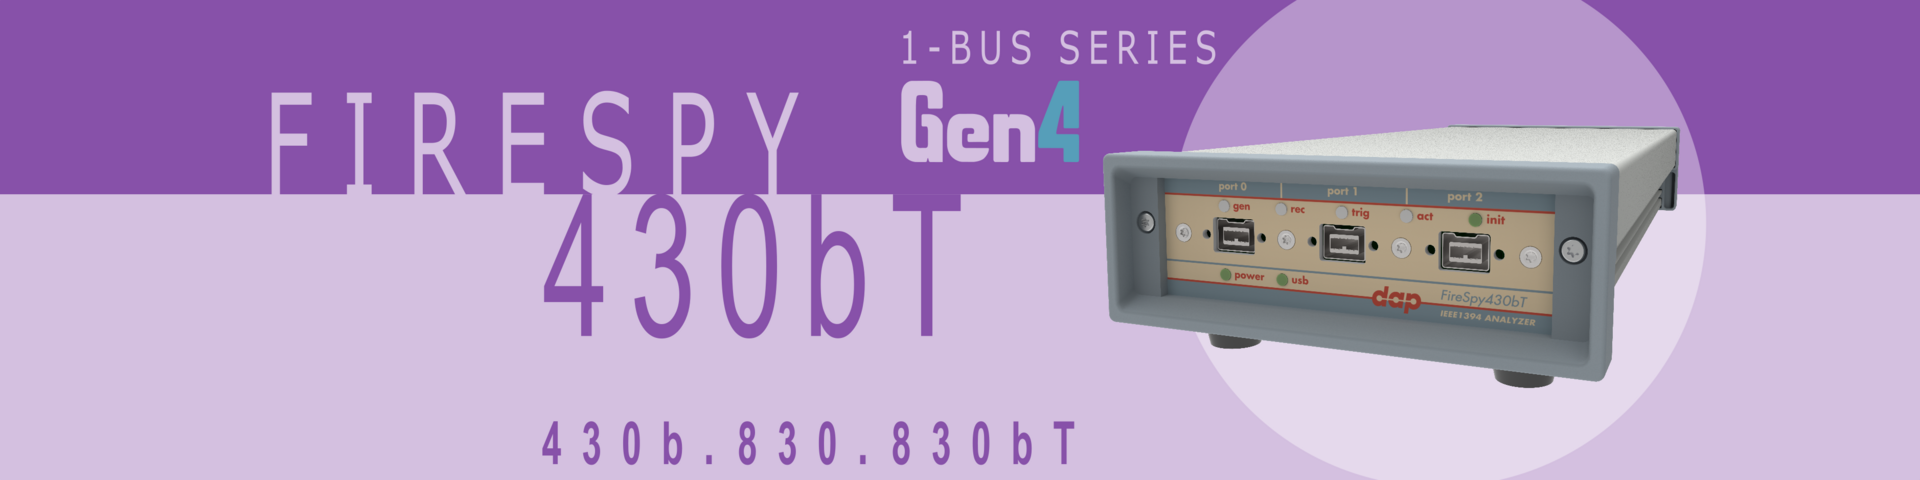 1394 and AS5643 Bus Analyzer - FireSpy430b(T)/830b(T)